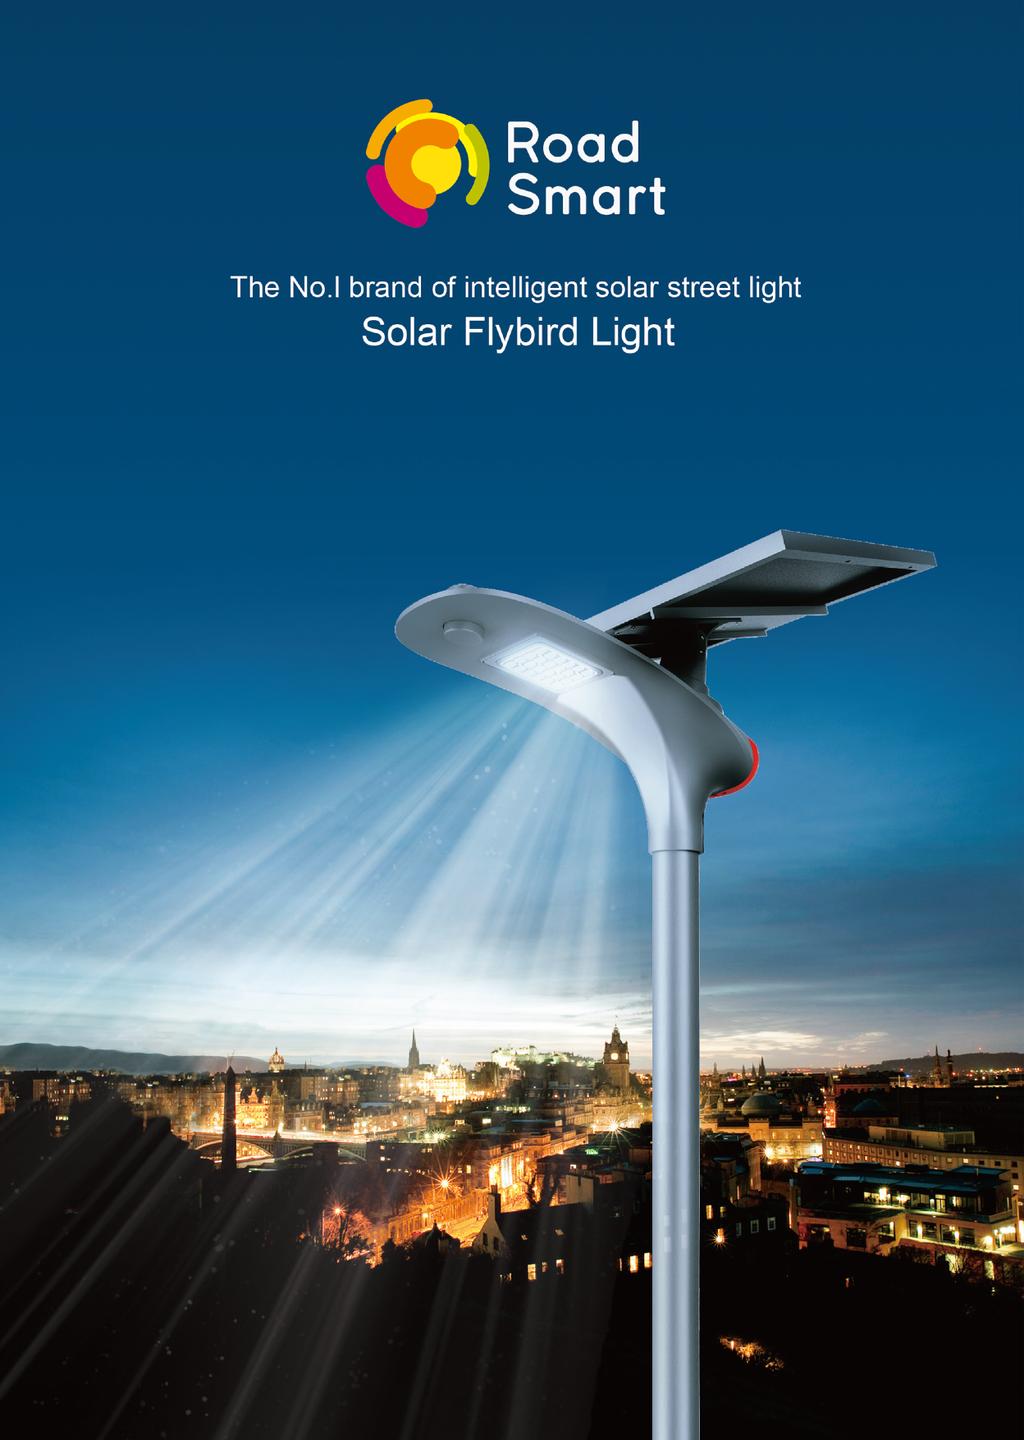 Solar Flybird Light Informatie Voor meer informatie over onze Solar Flybird Light en hoe deze